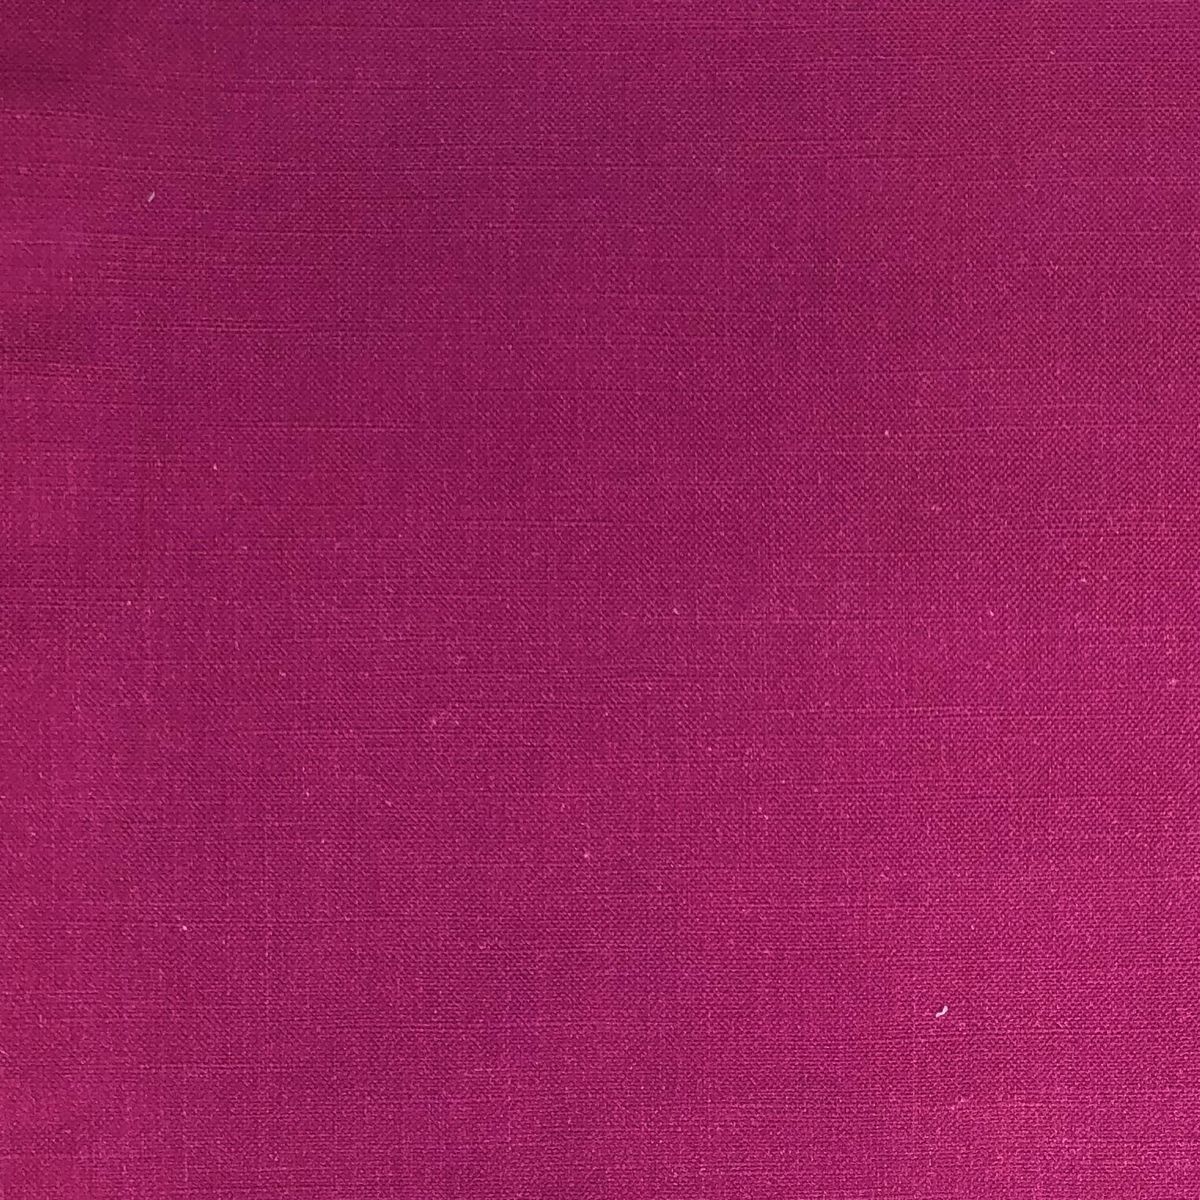 Eden Raspberry Snr Fabric by Chatham Glyn